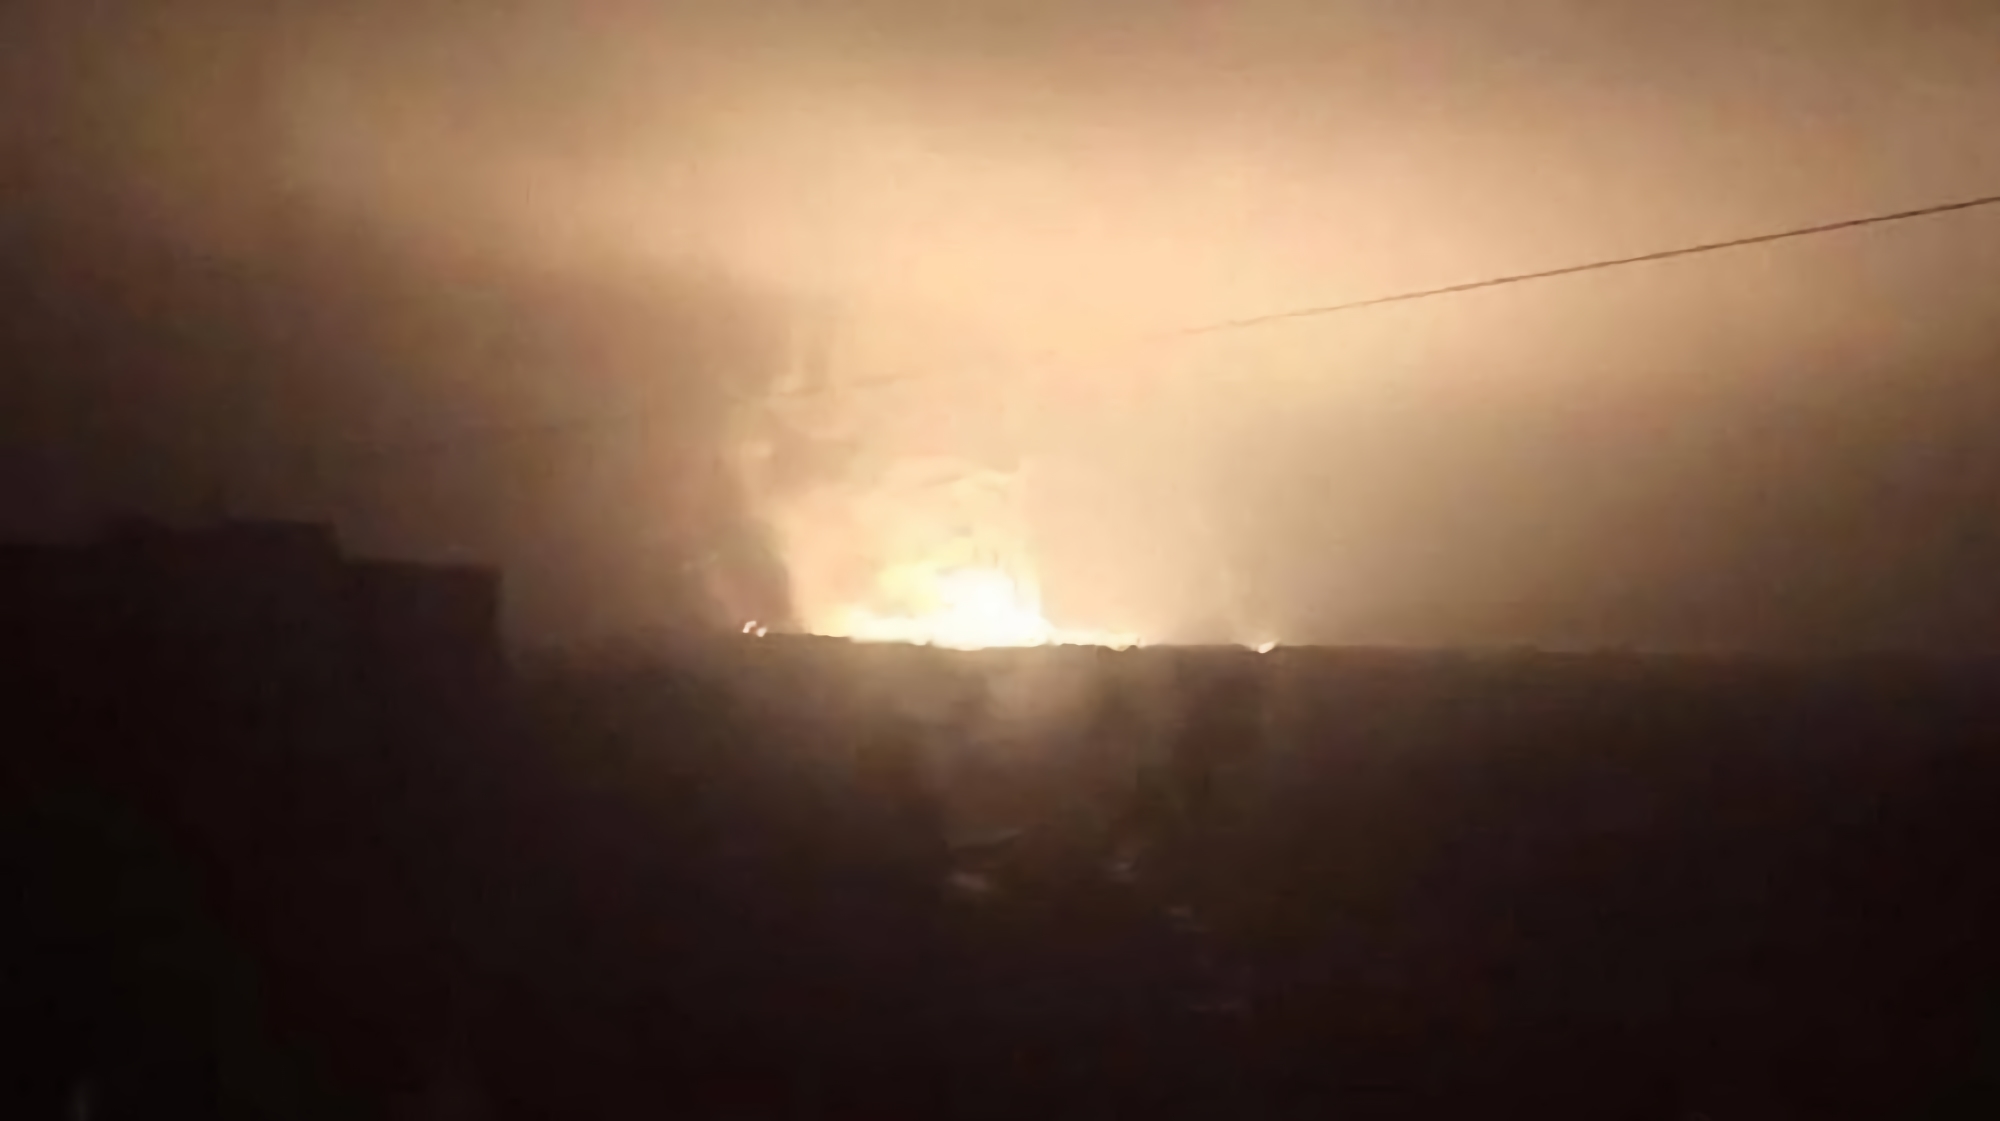 La nuit tombe, les HIMARS se réveillent : série d'explosions dans la partie occupée de Luhansk